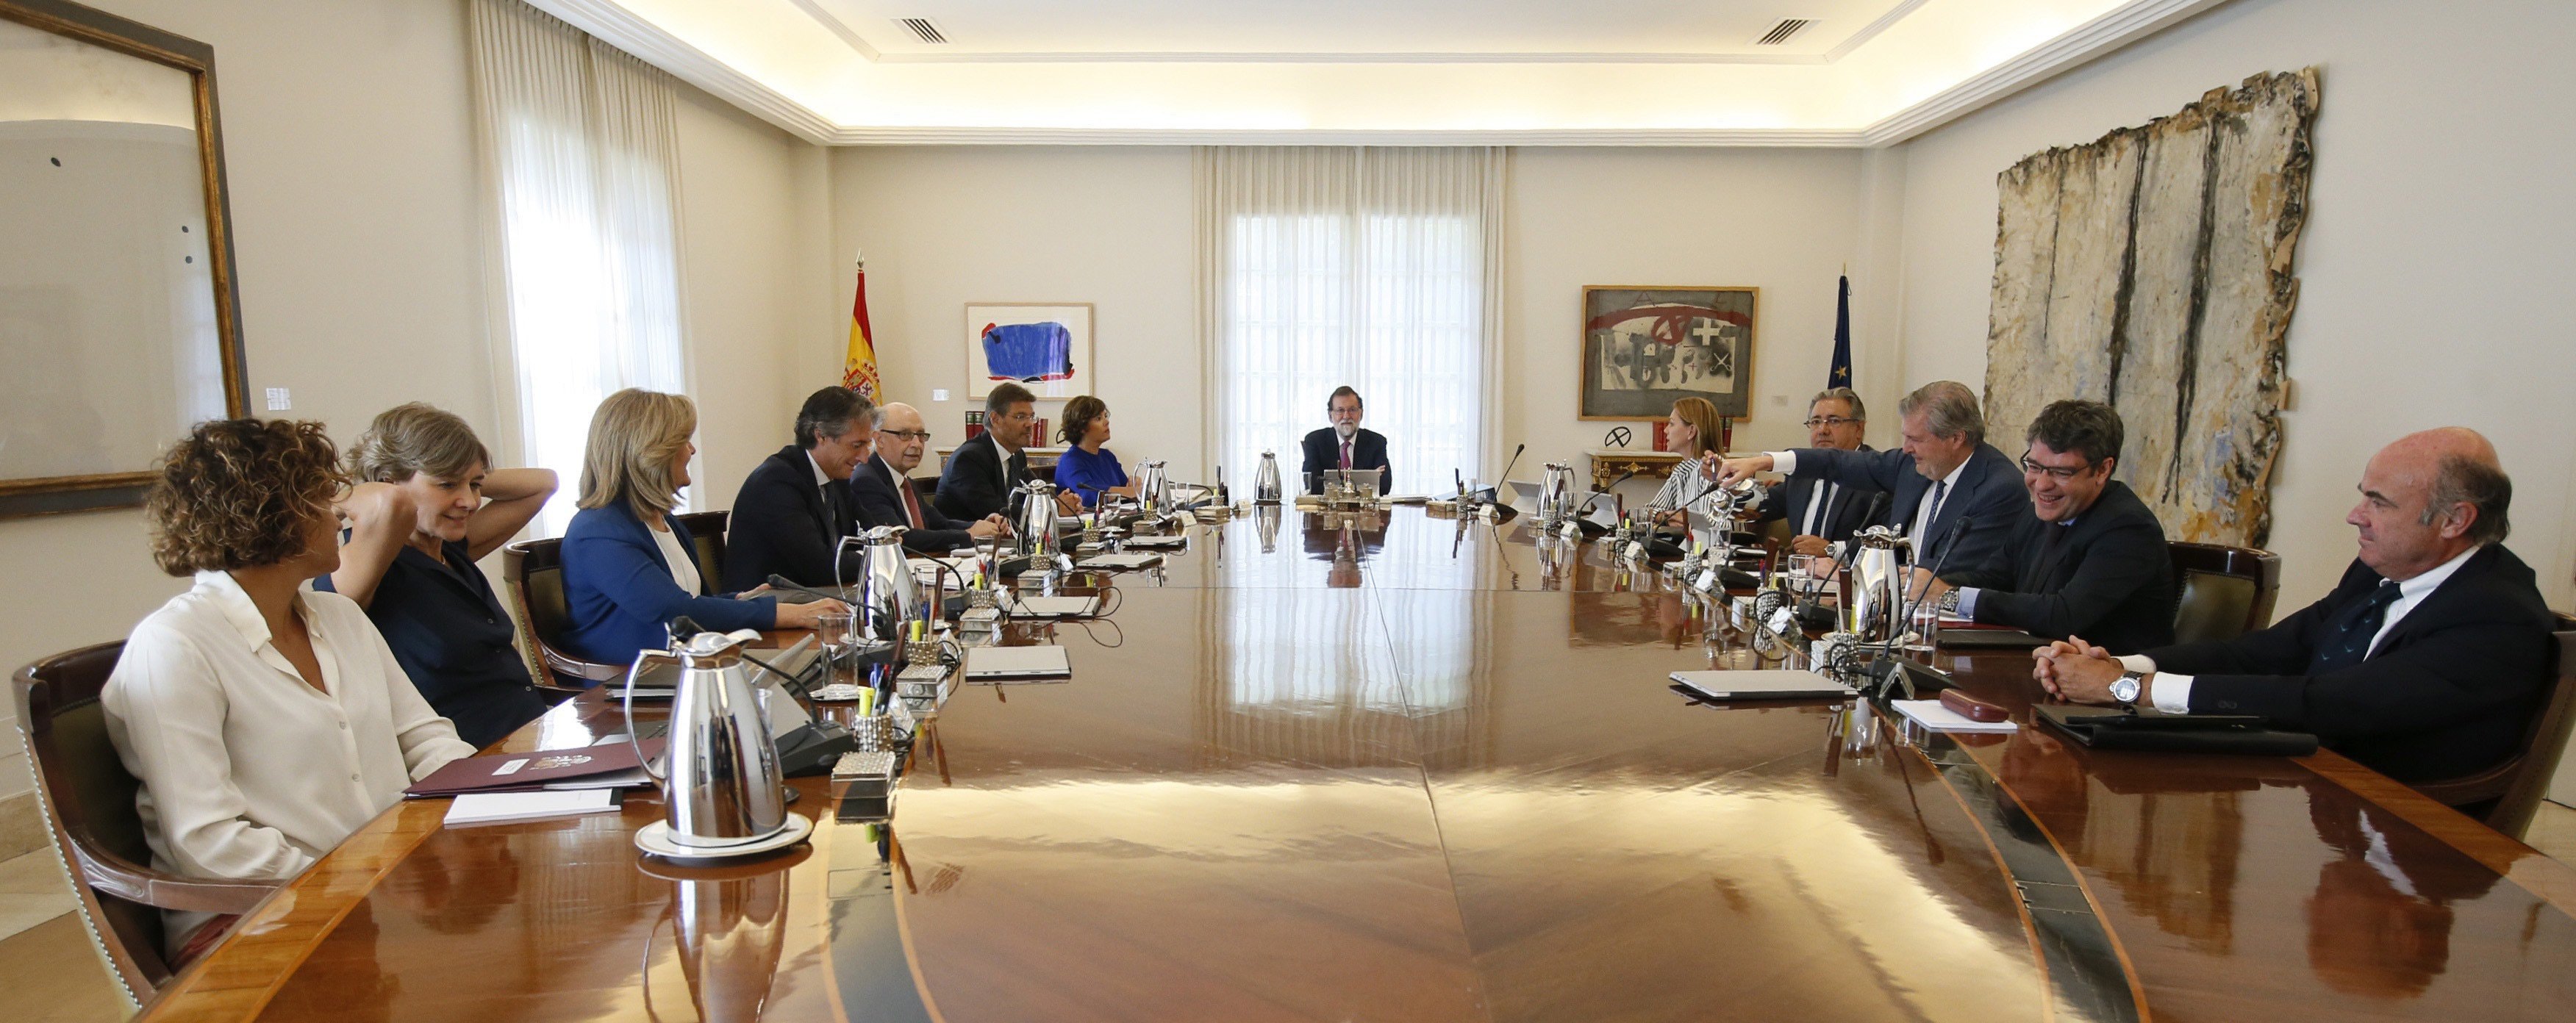 Este viernes, Consejo de Ministros con la mirada puesta en Catalunya